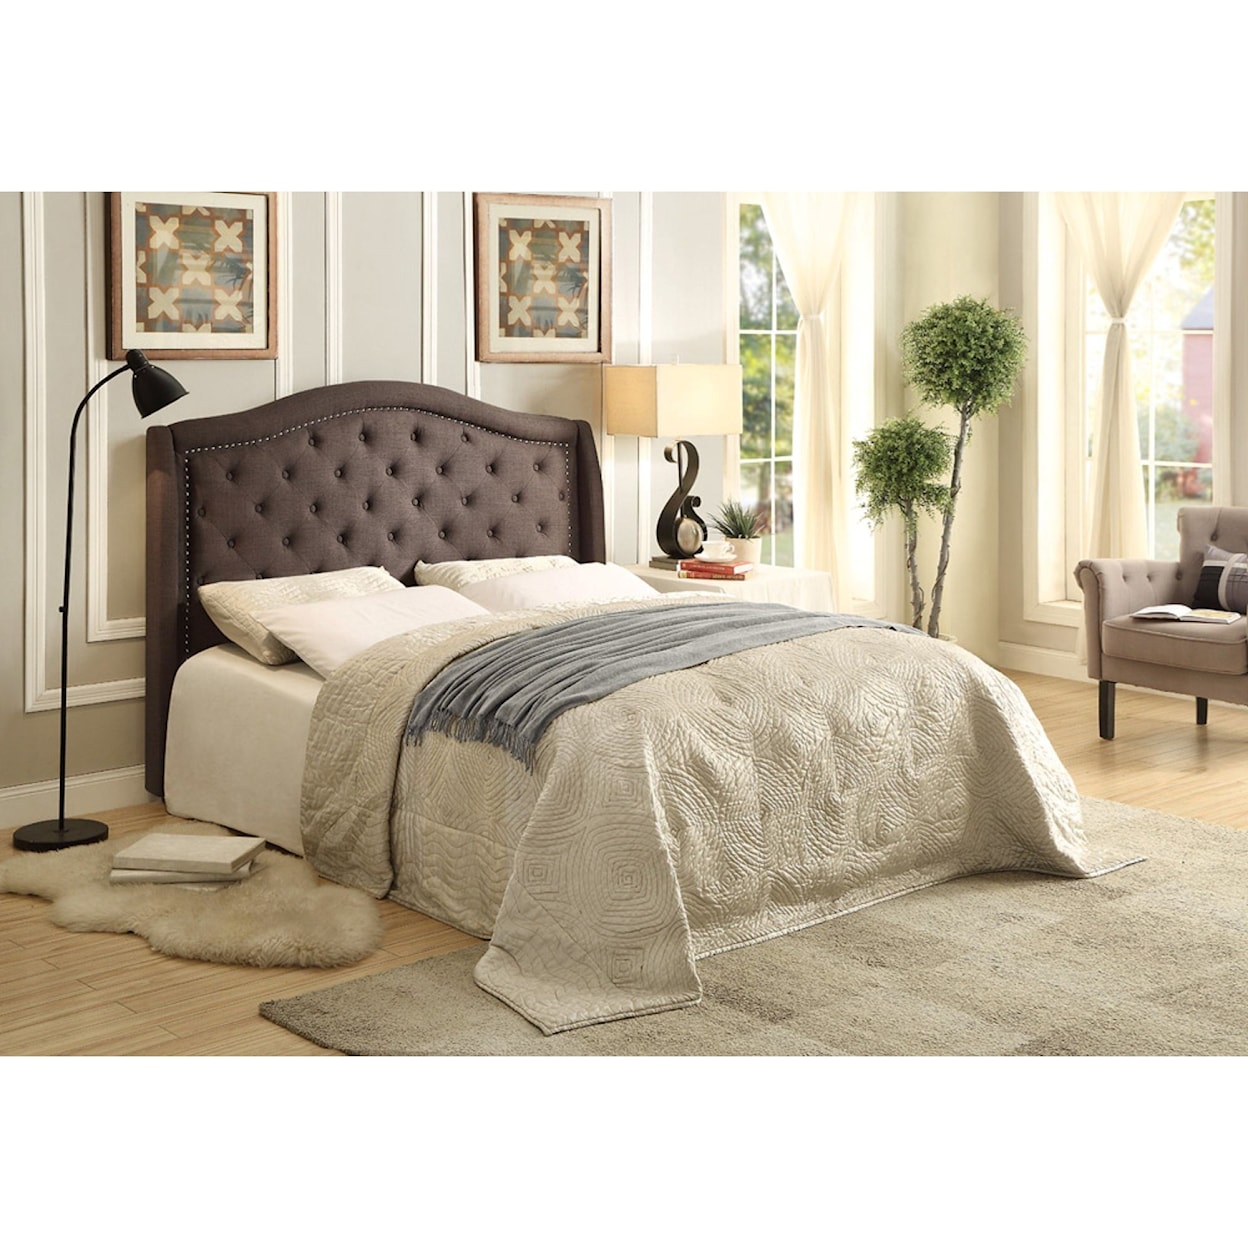 Homelegance Bryndle Cal King Upholstered Bed